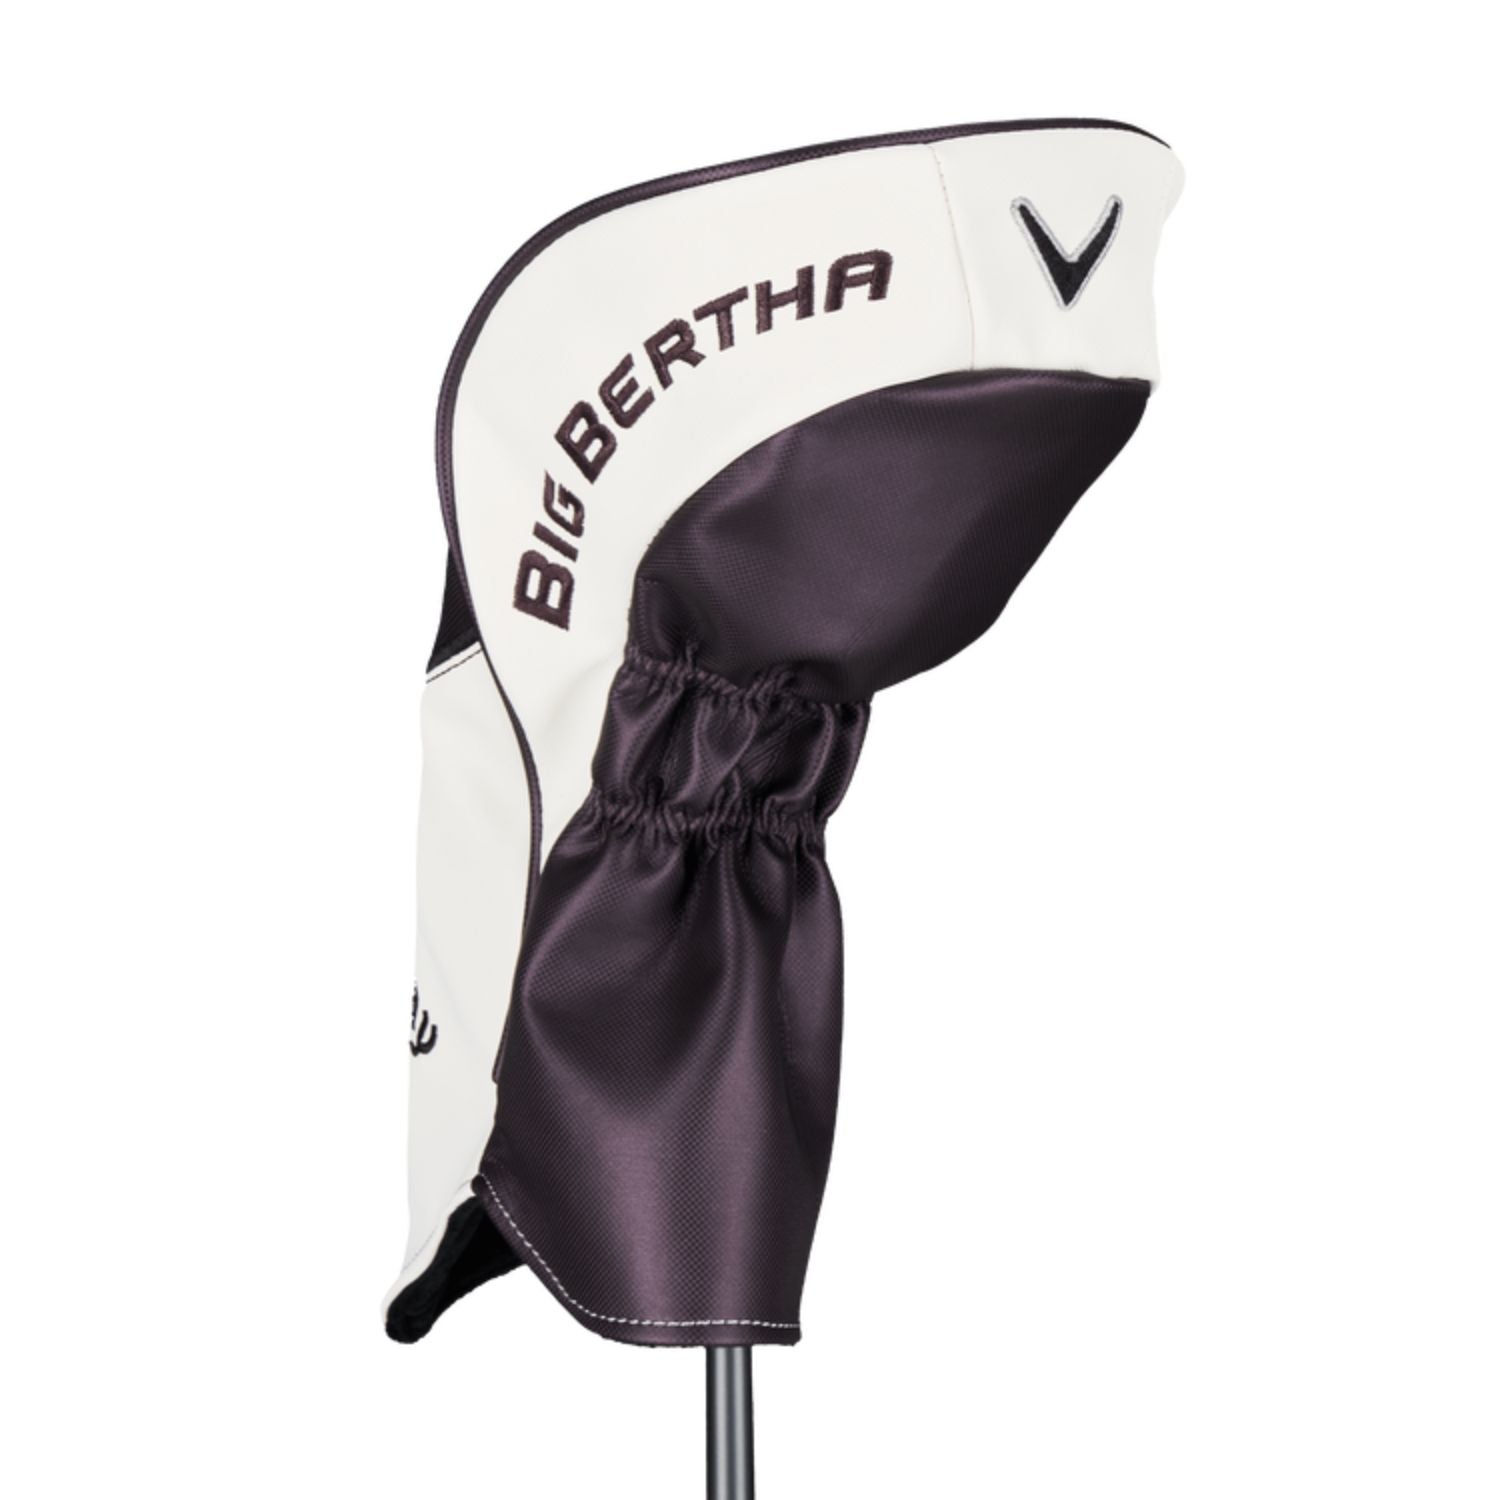 Callaway Ladies Big Bertha Reva Golf Driver